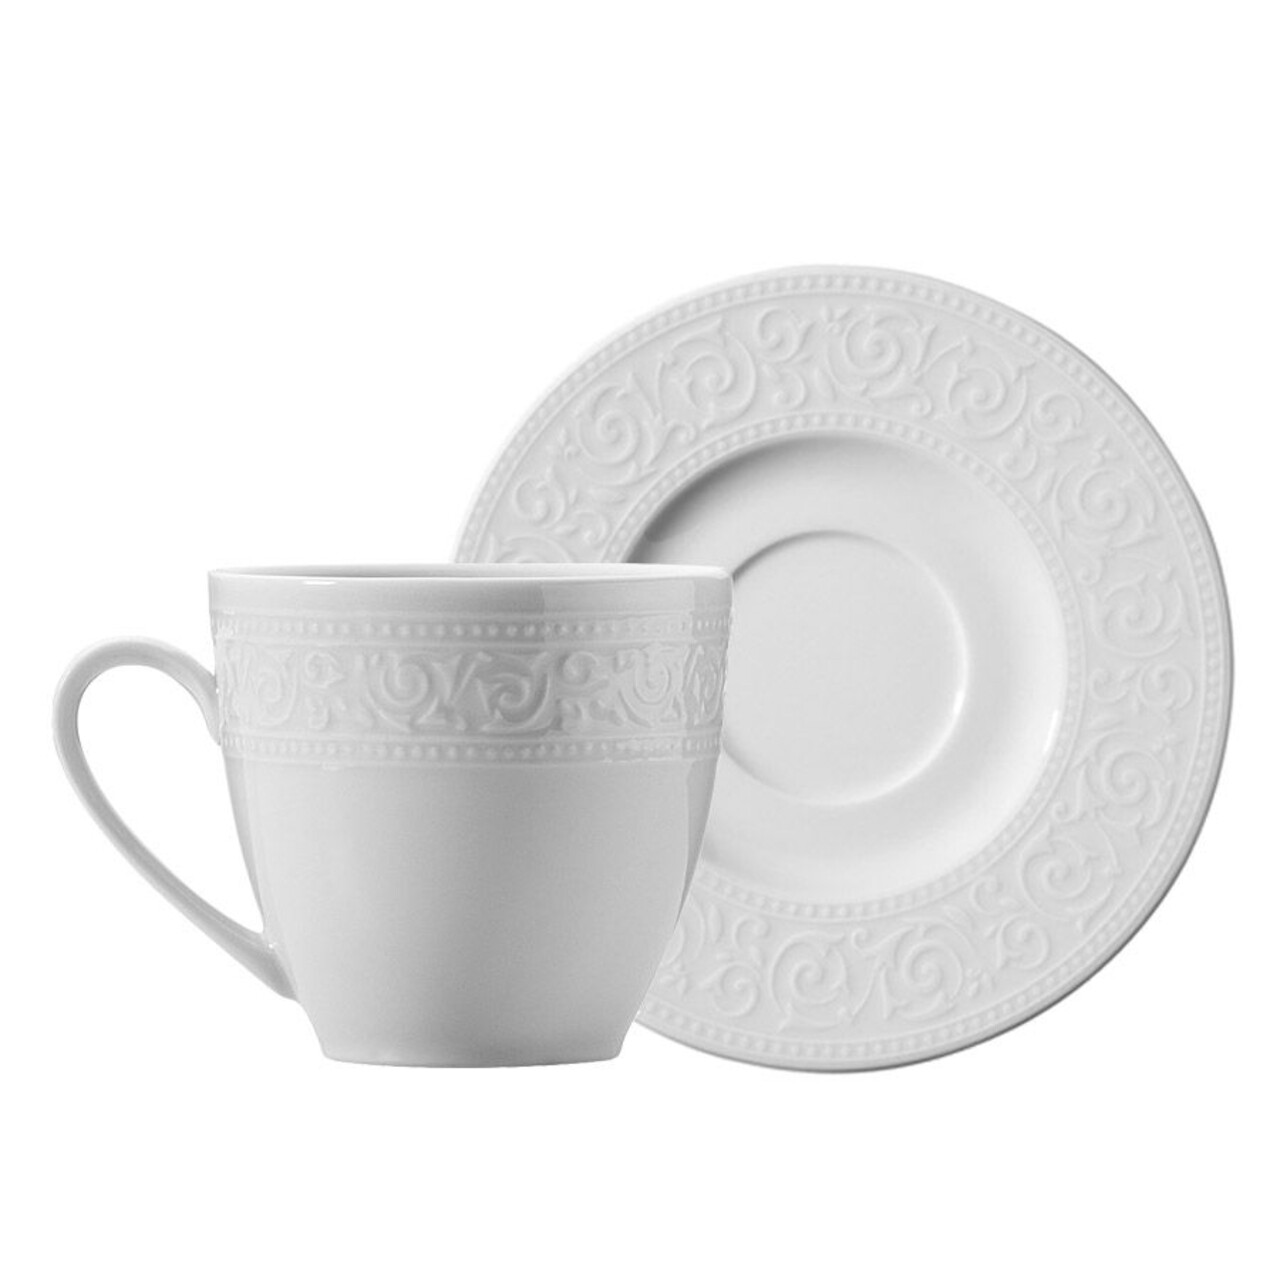 Kutahya Porselen Kávés szett, ACL12KT00, 12 darabos, porcelán